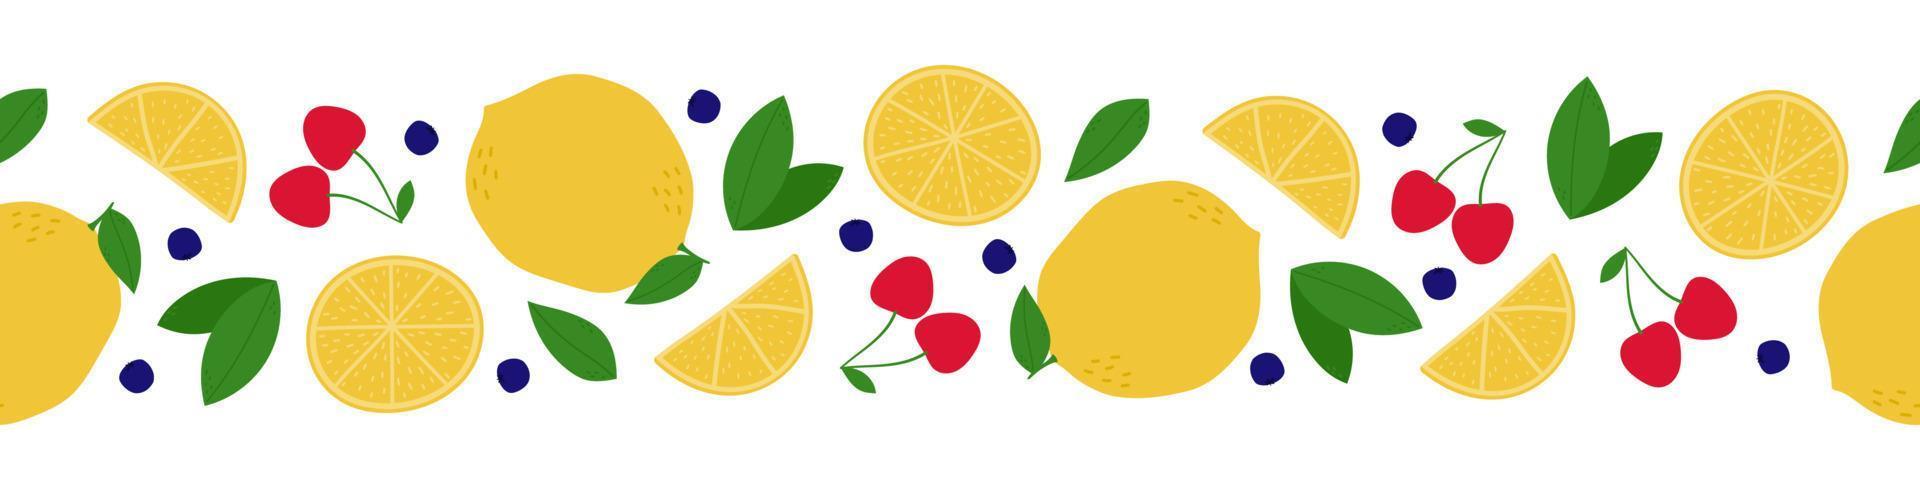 bordo senza cuciture di frutta e bacche. ciliegia, limone, foglia e mirtillo su sfondo bianco vettore